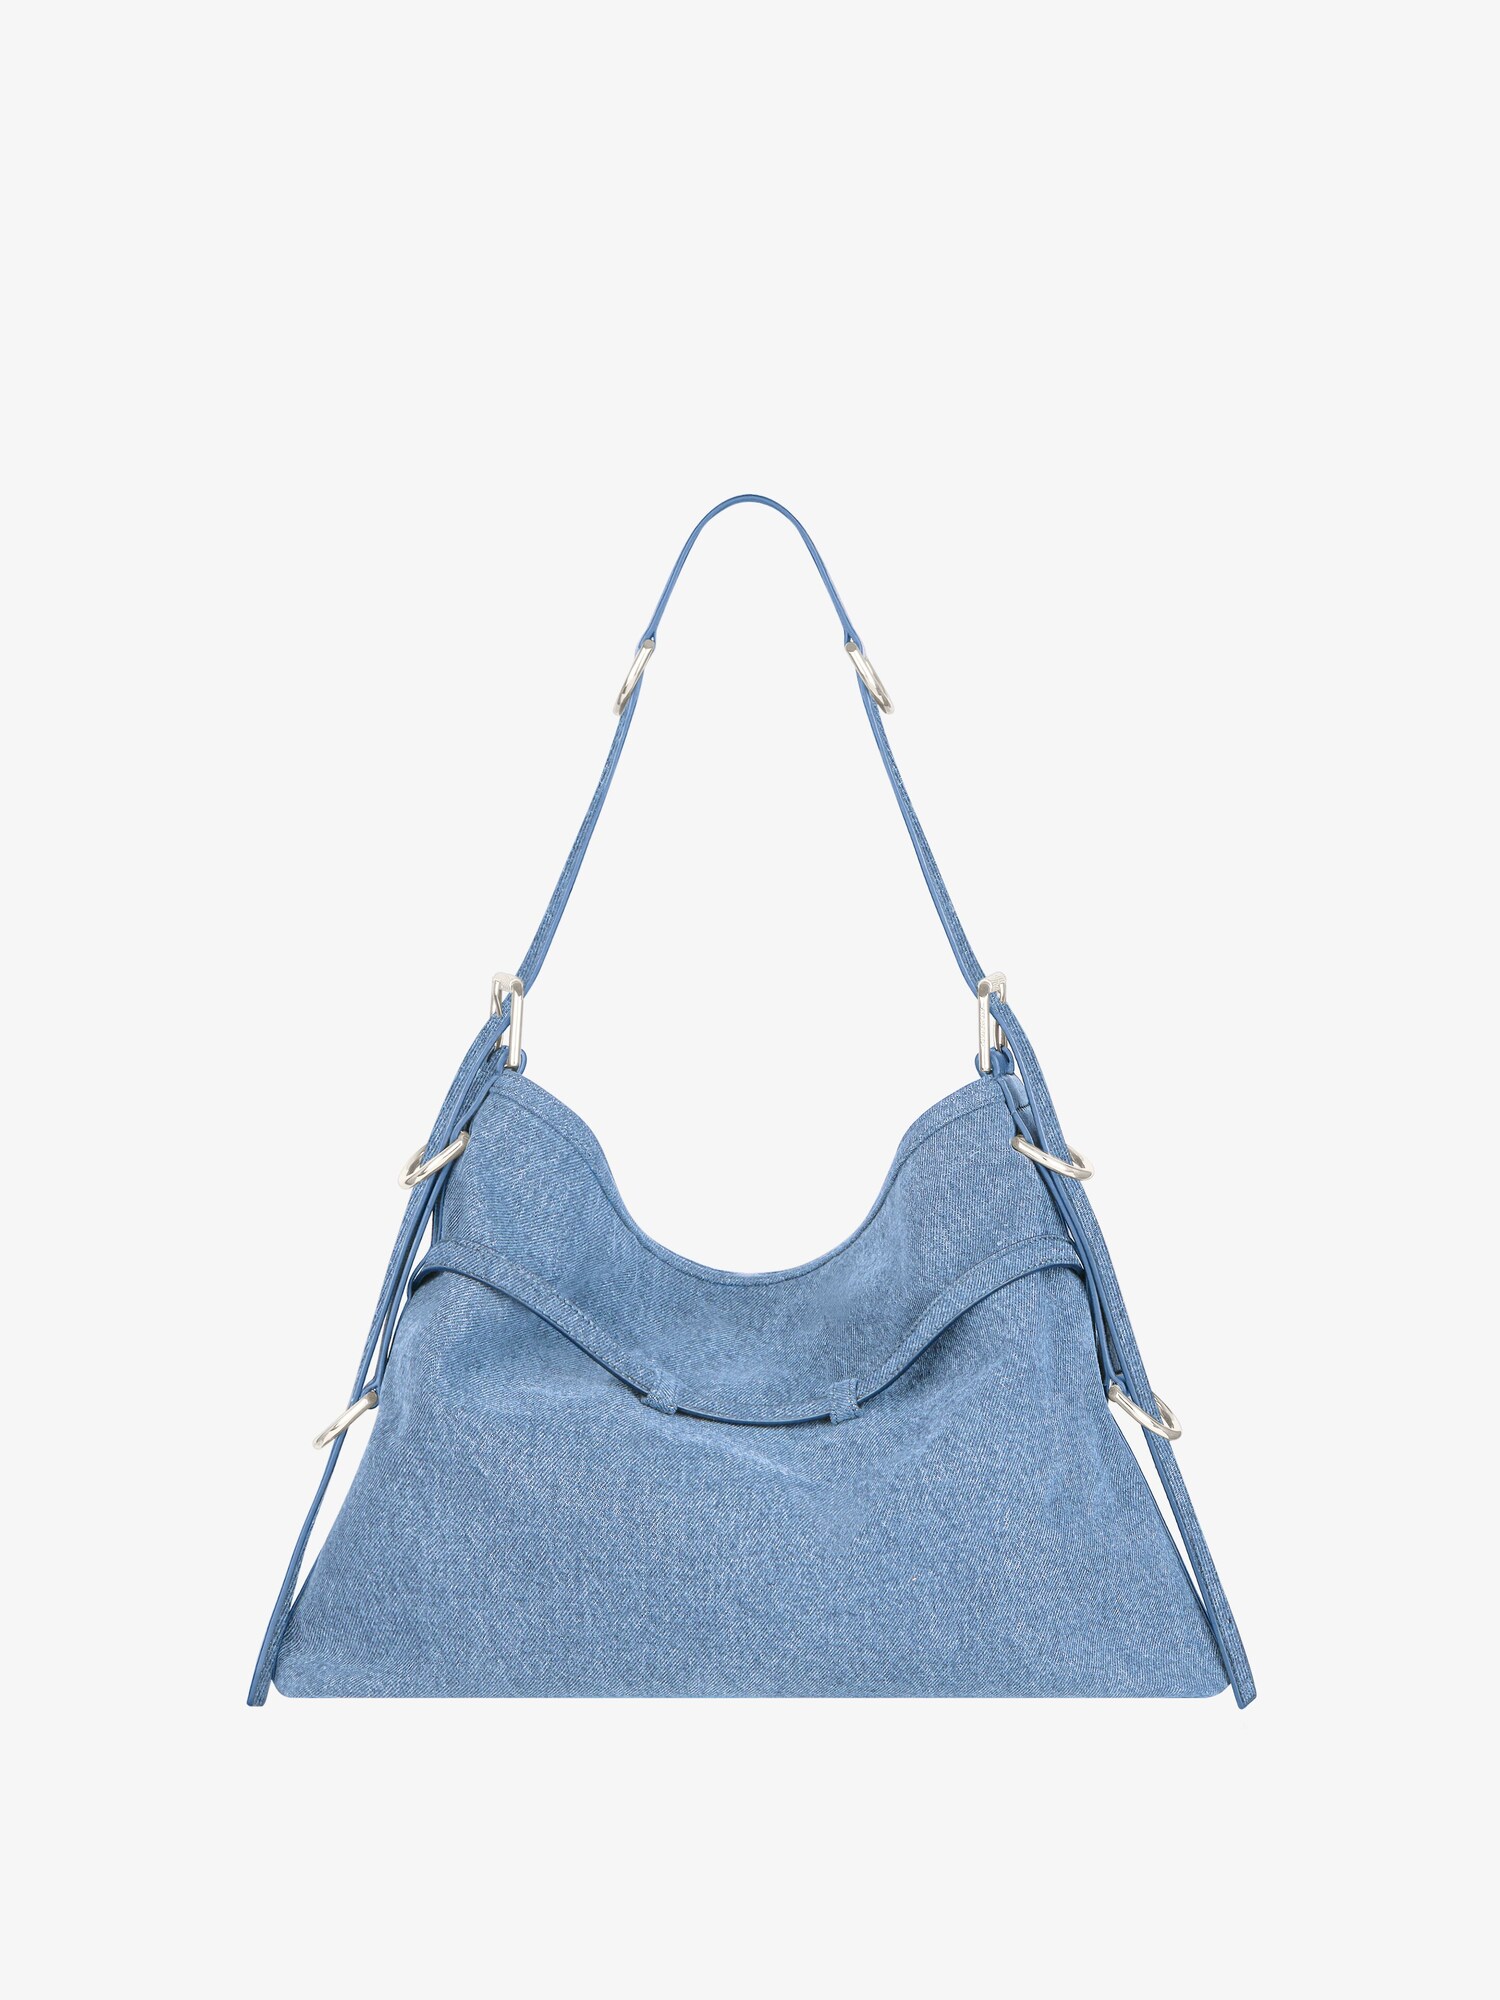 Medium Voyou bag in denim - medium blue | Givenchy